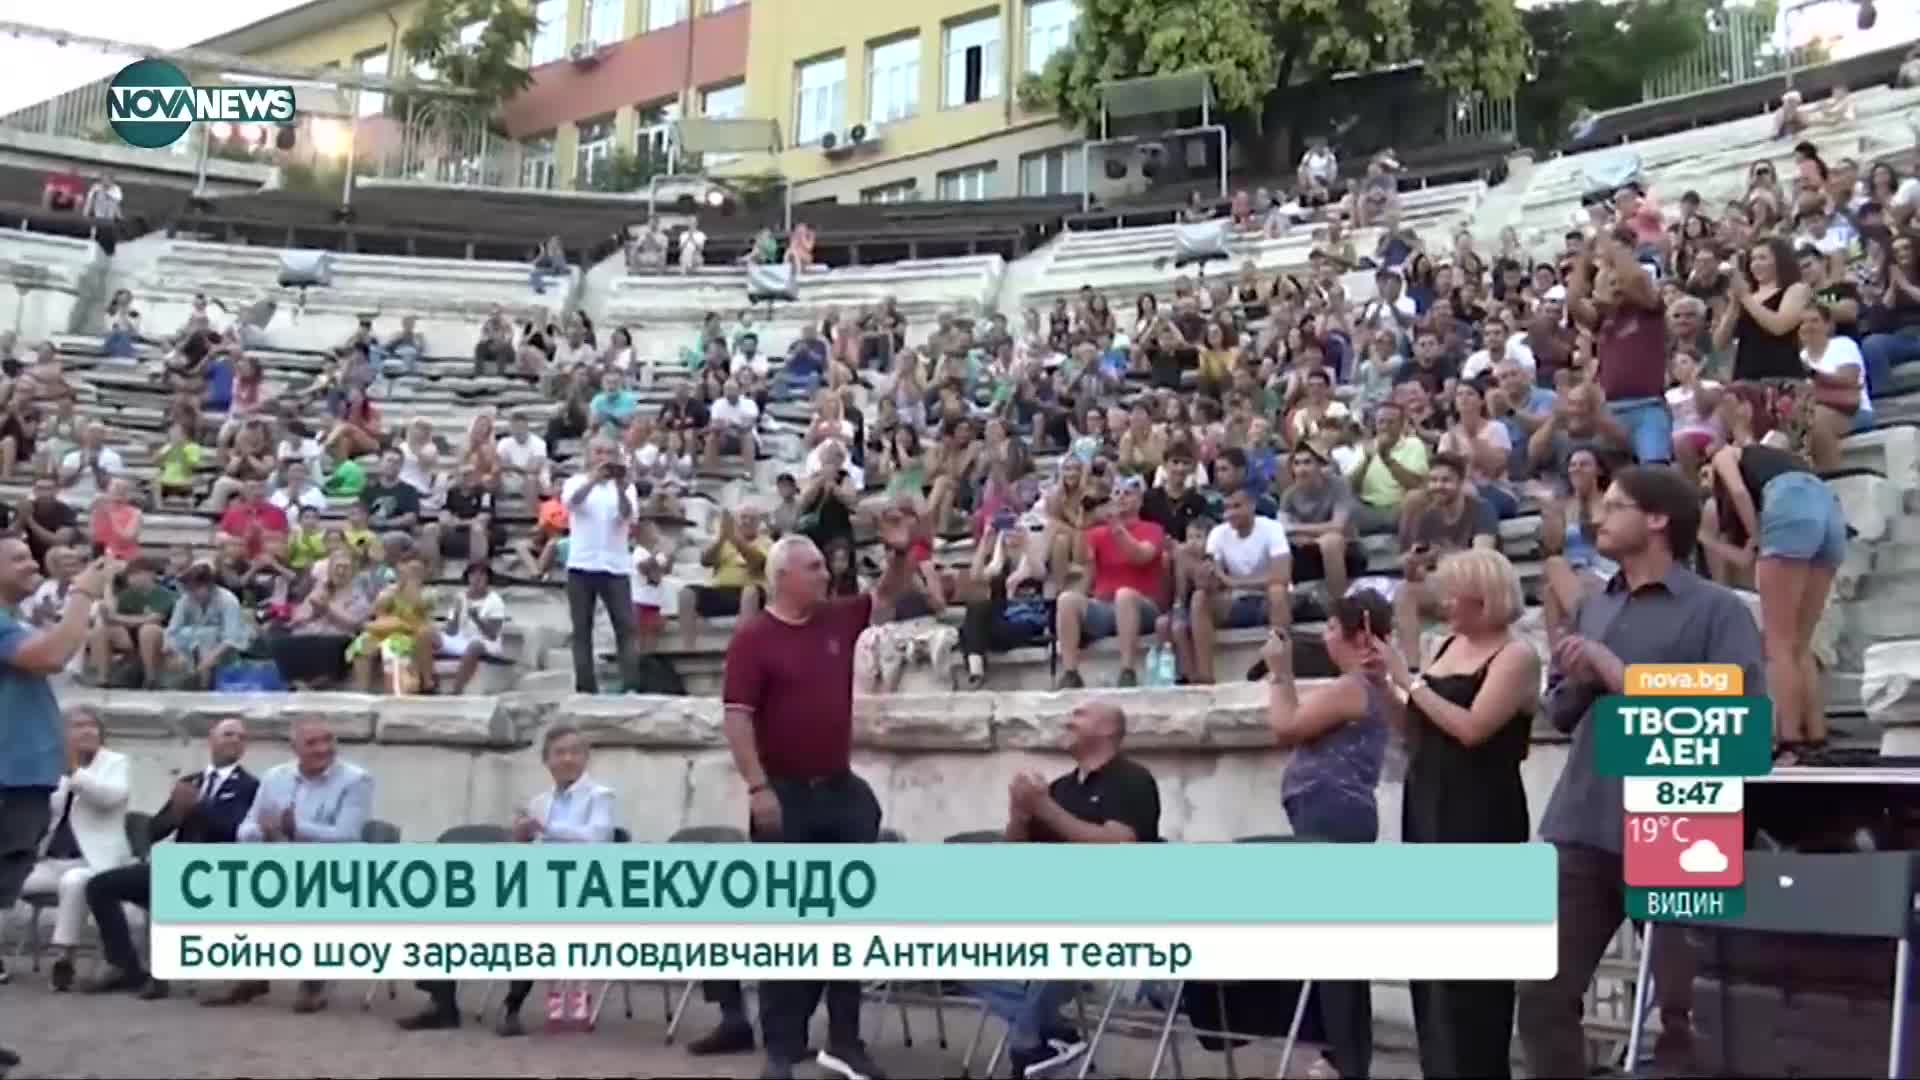 Христо Стоичков обра овациите на бойно шоу в Античния театър в Пловдив